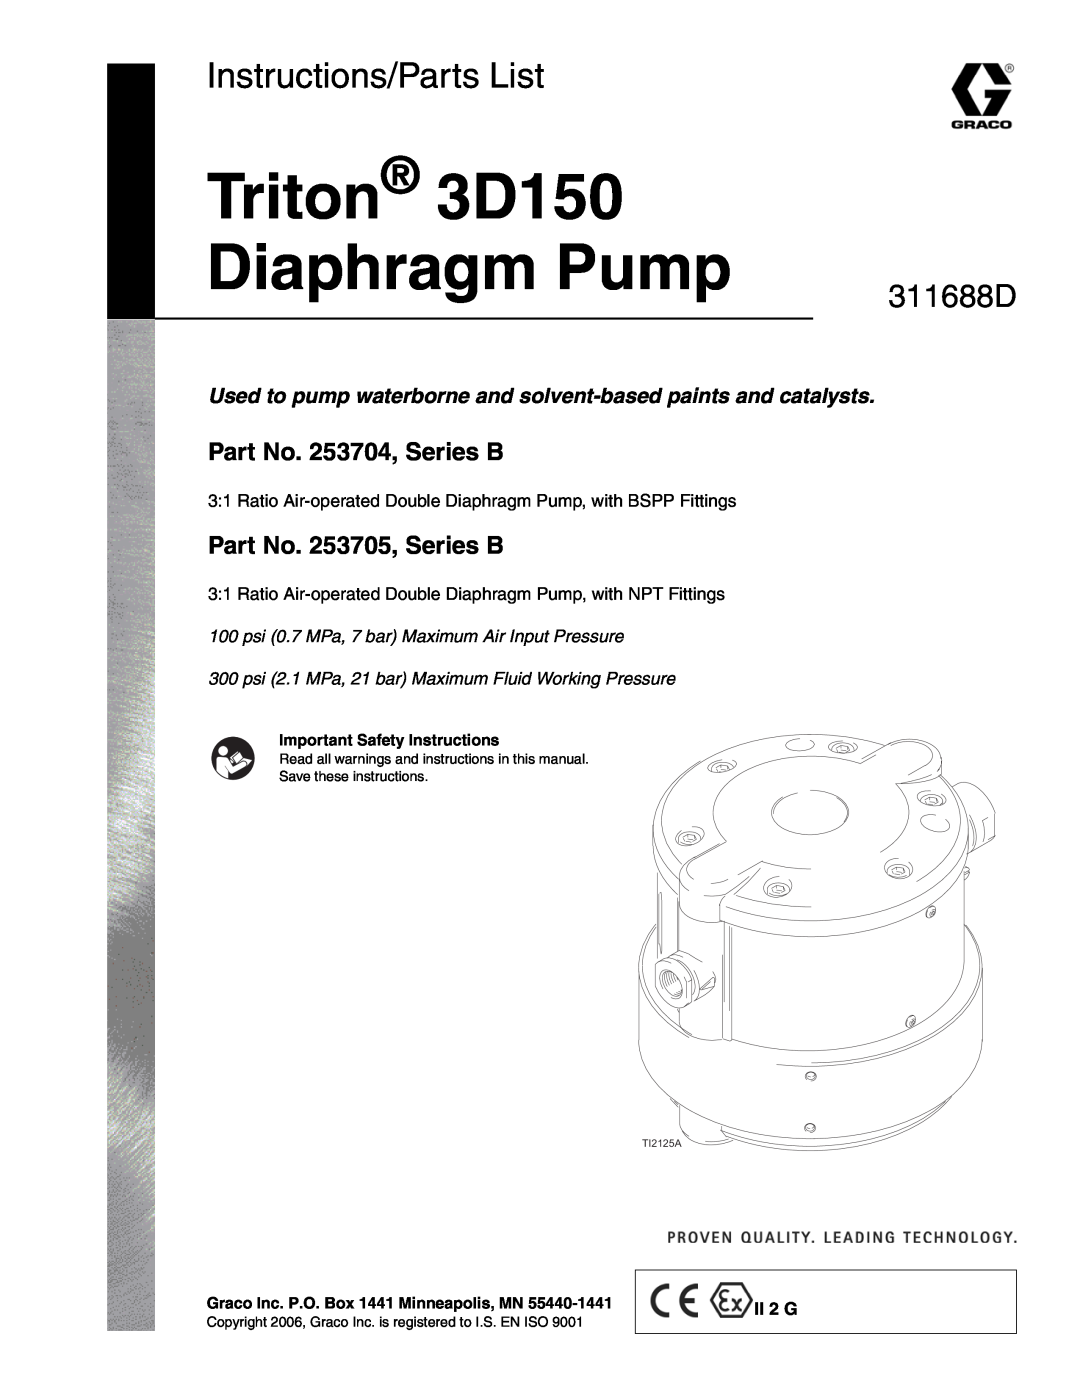 Graco important safety instructions Triton 3D150 Diaphragm Pump, Instructions/Parts List, 311688D 